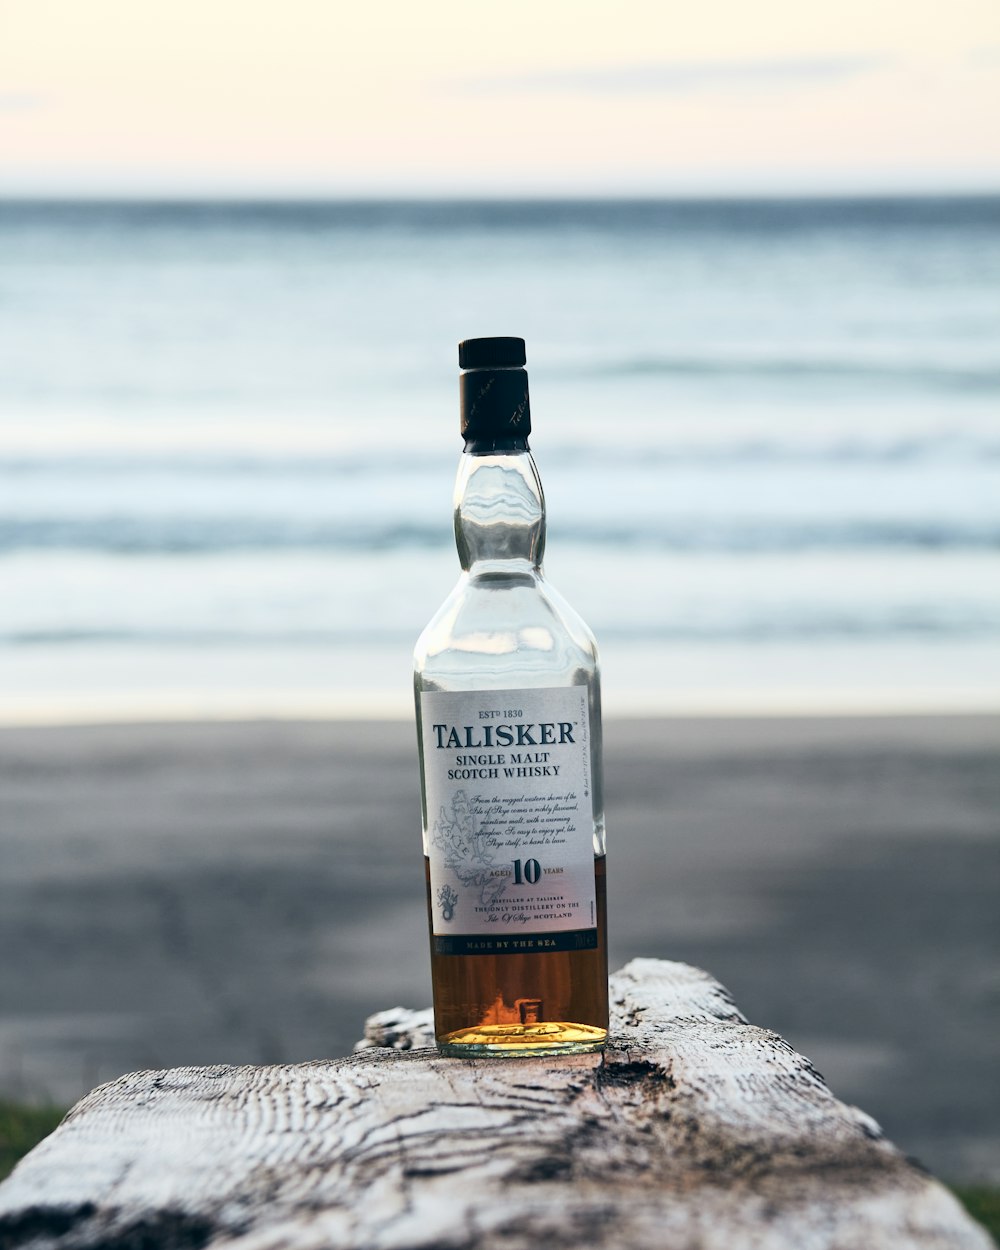 a bottle of talisker on a rock near the ocean